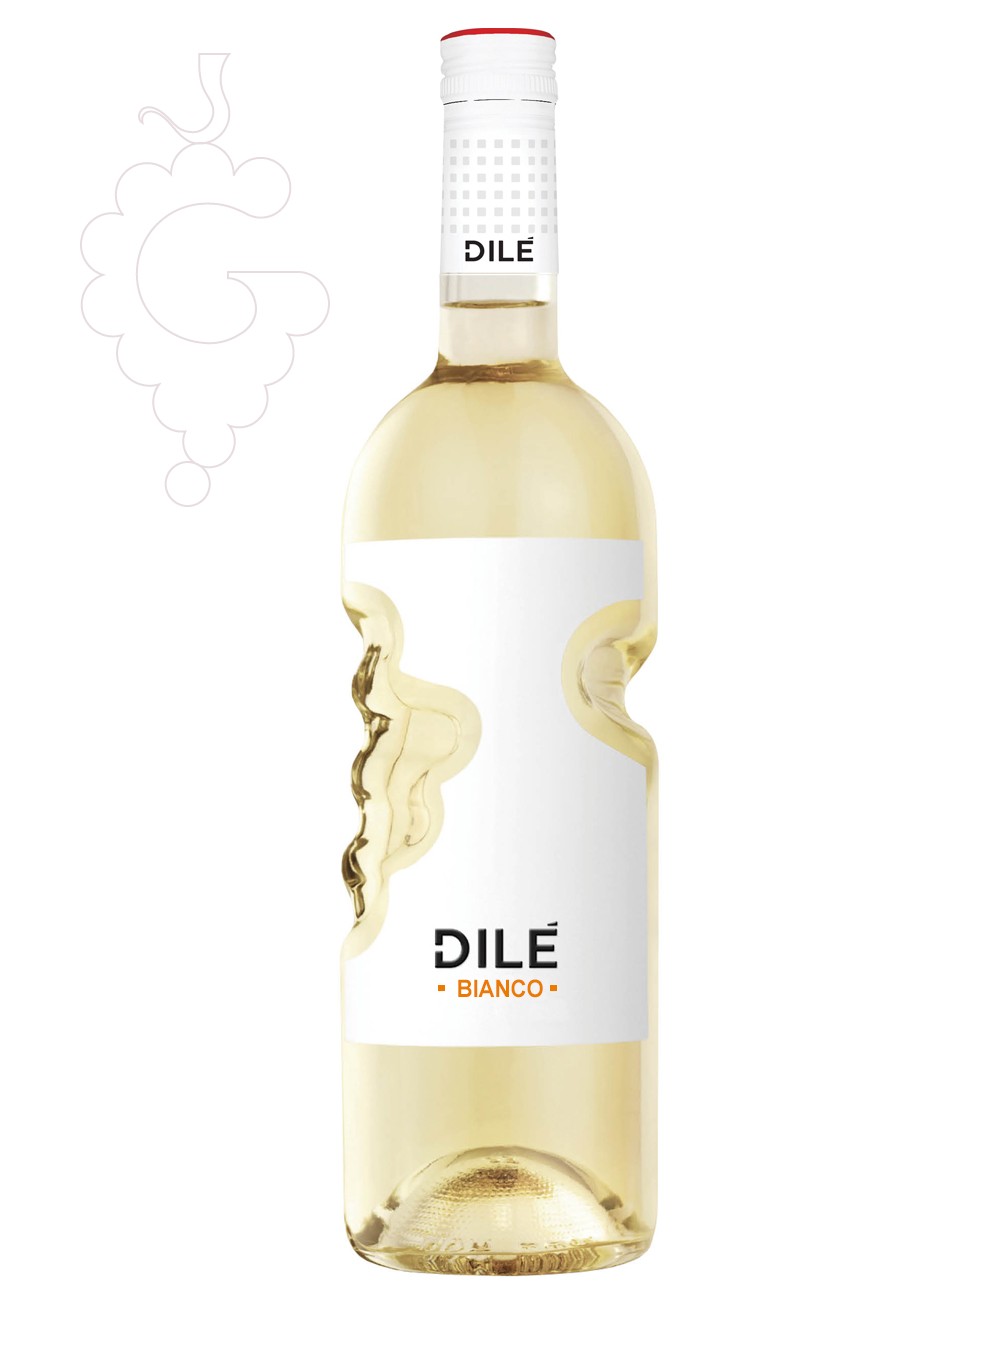 Foto Dilé Bianco vino blanco